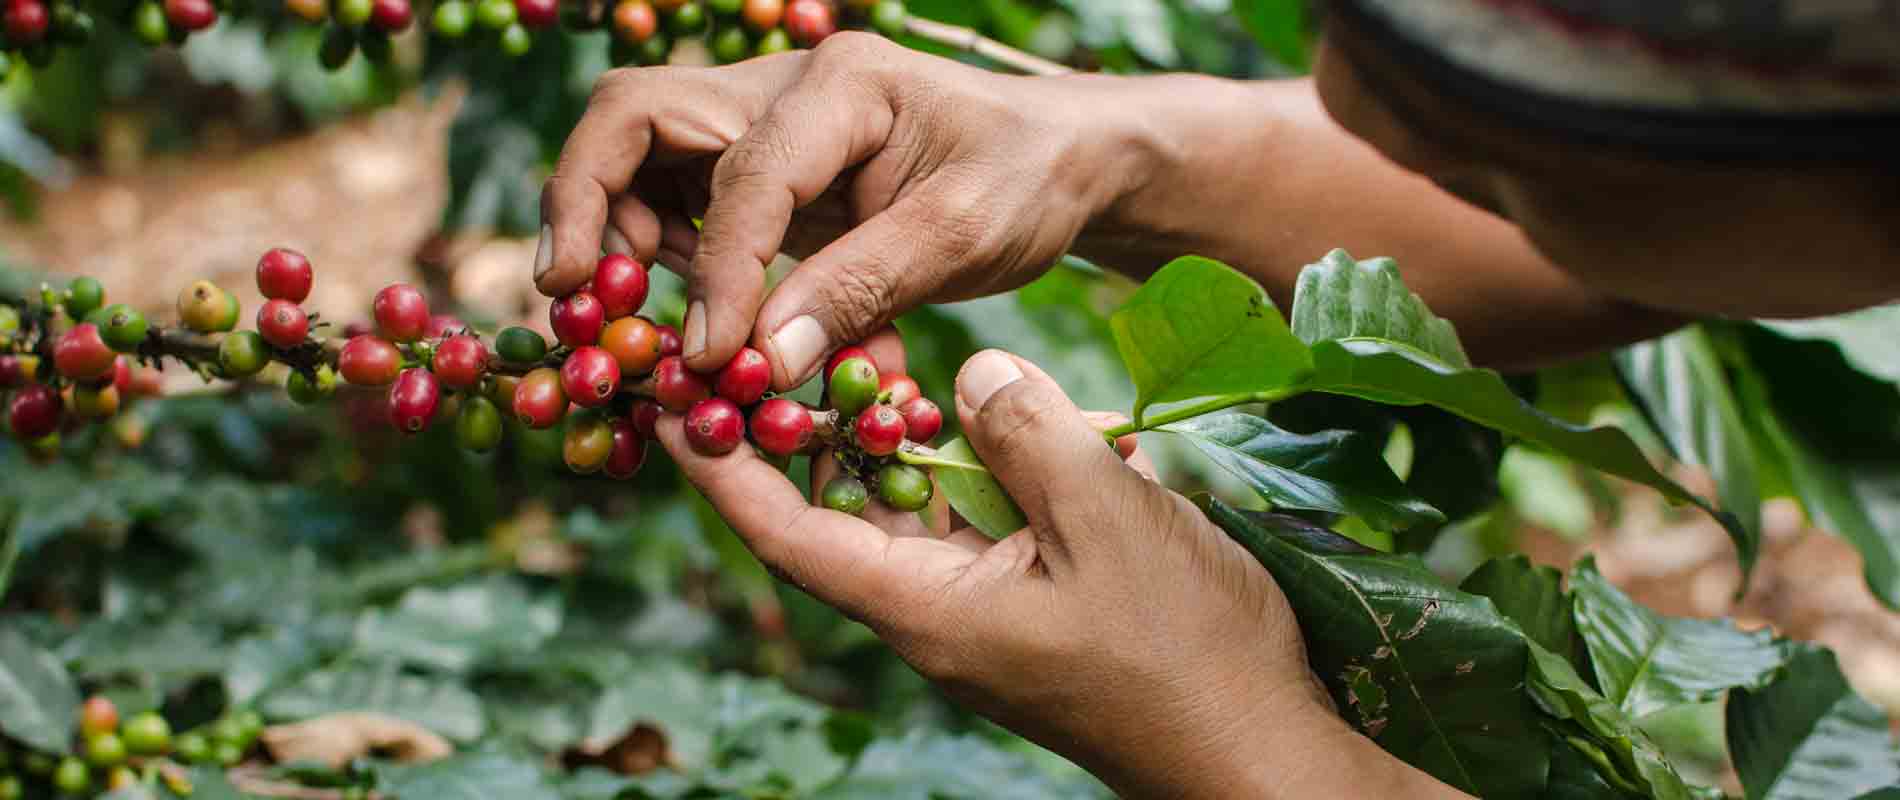 Где выращивают кофе